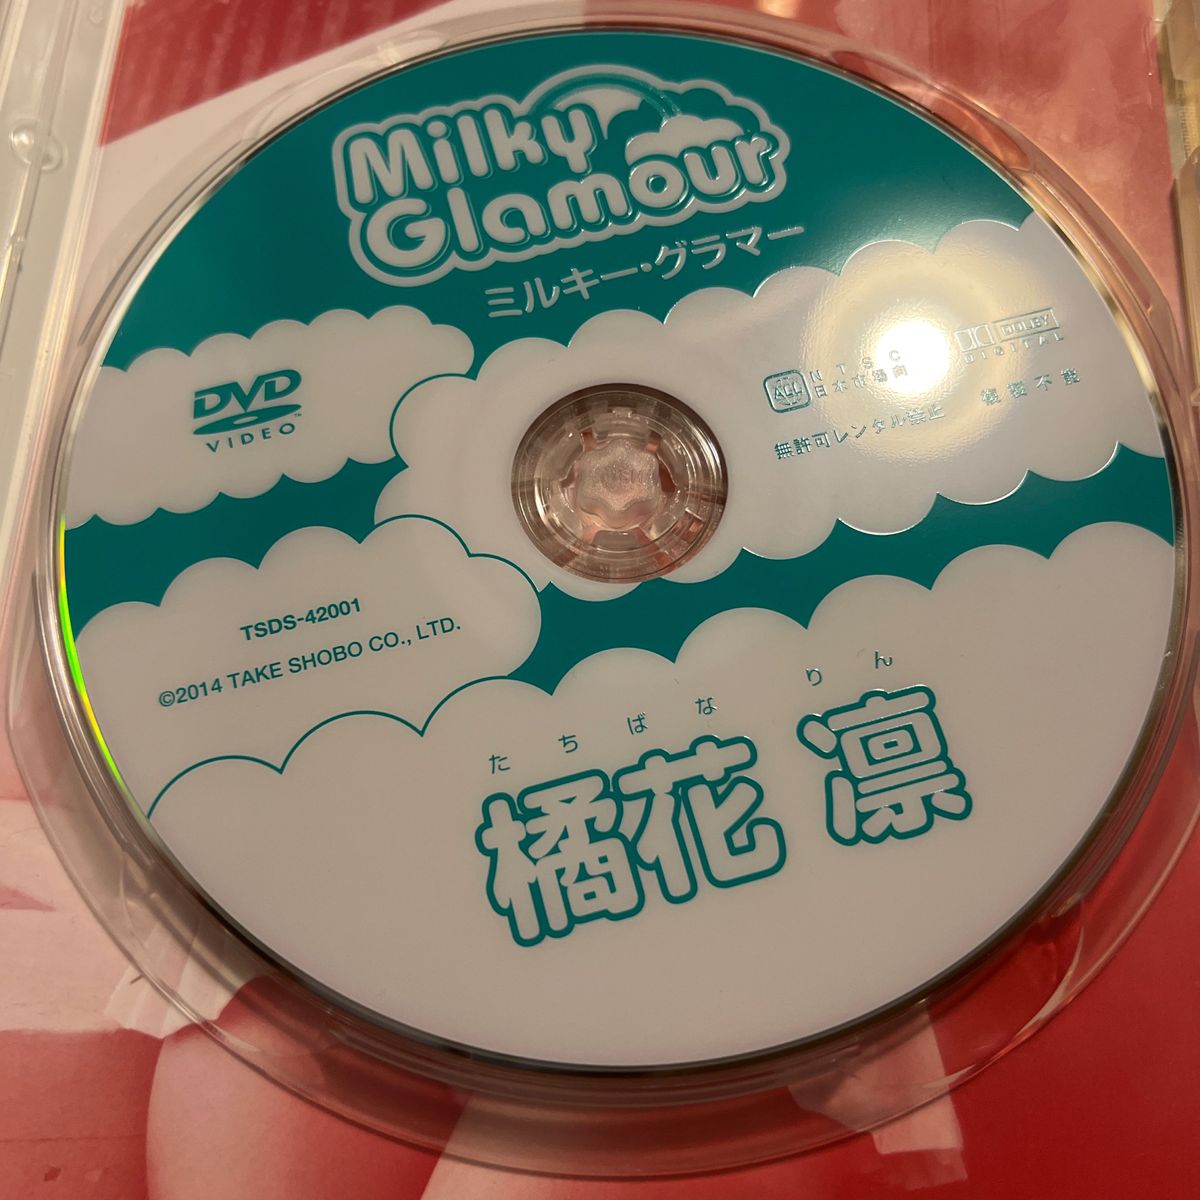 橘花凛 Milky Glamour ミルキー・グラマー  DVD